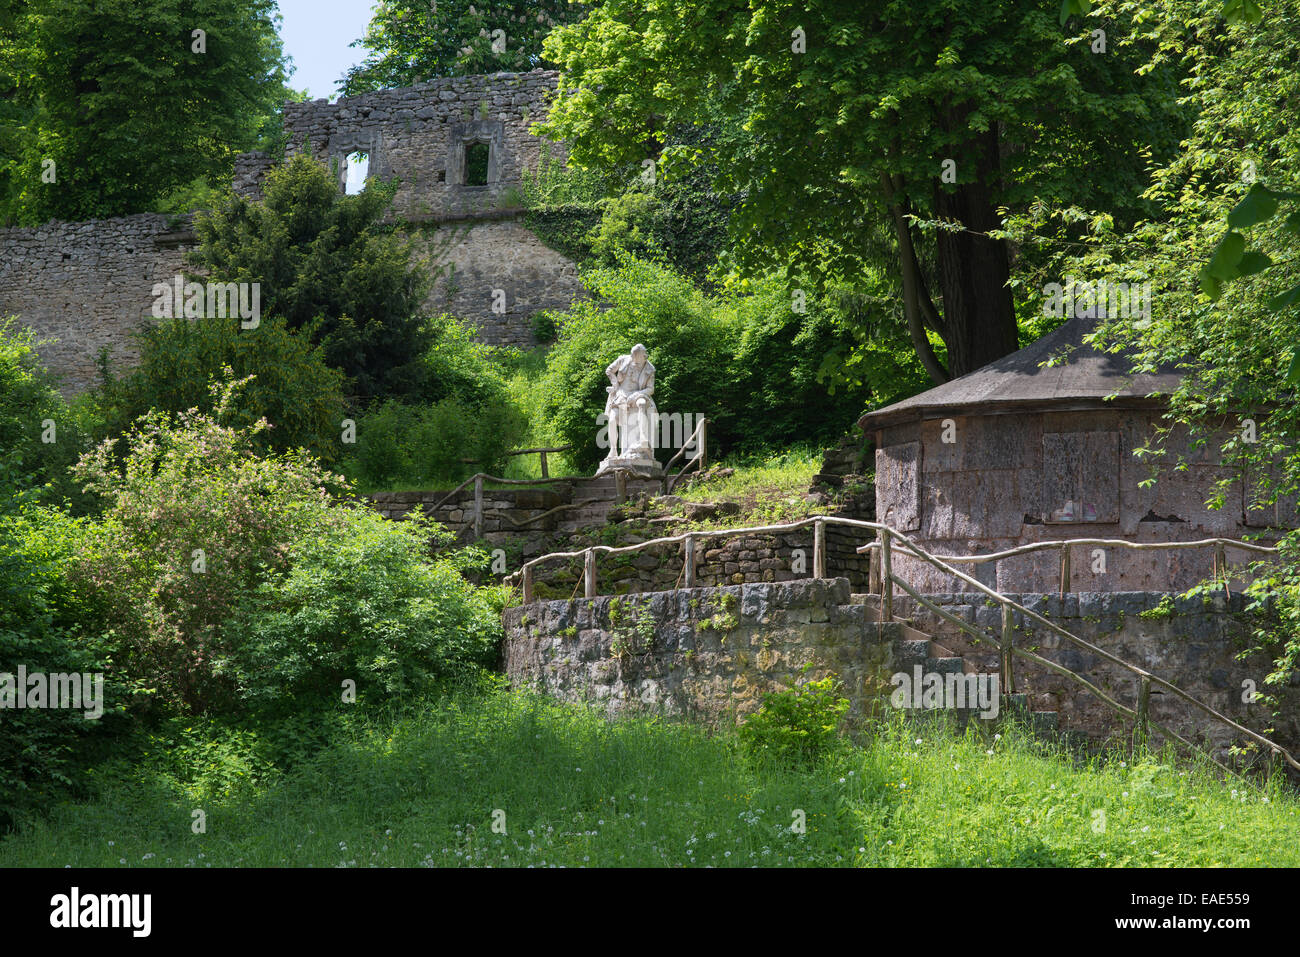 Borkenhaeuschen, Borken Cottage, Monumento di Shakespeare e rovine artificiali, Ilm Park, sito Patrimonio Mondiale dell'UNESCO, Weimar Foto Stock